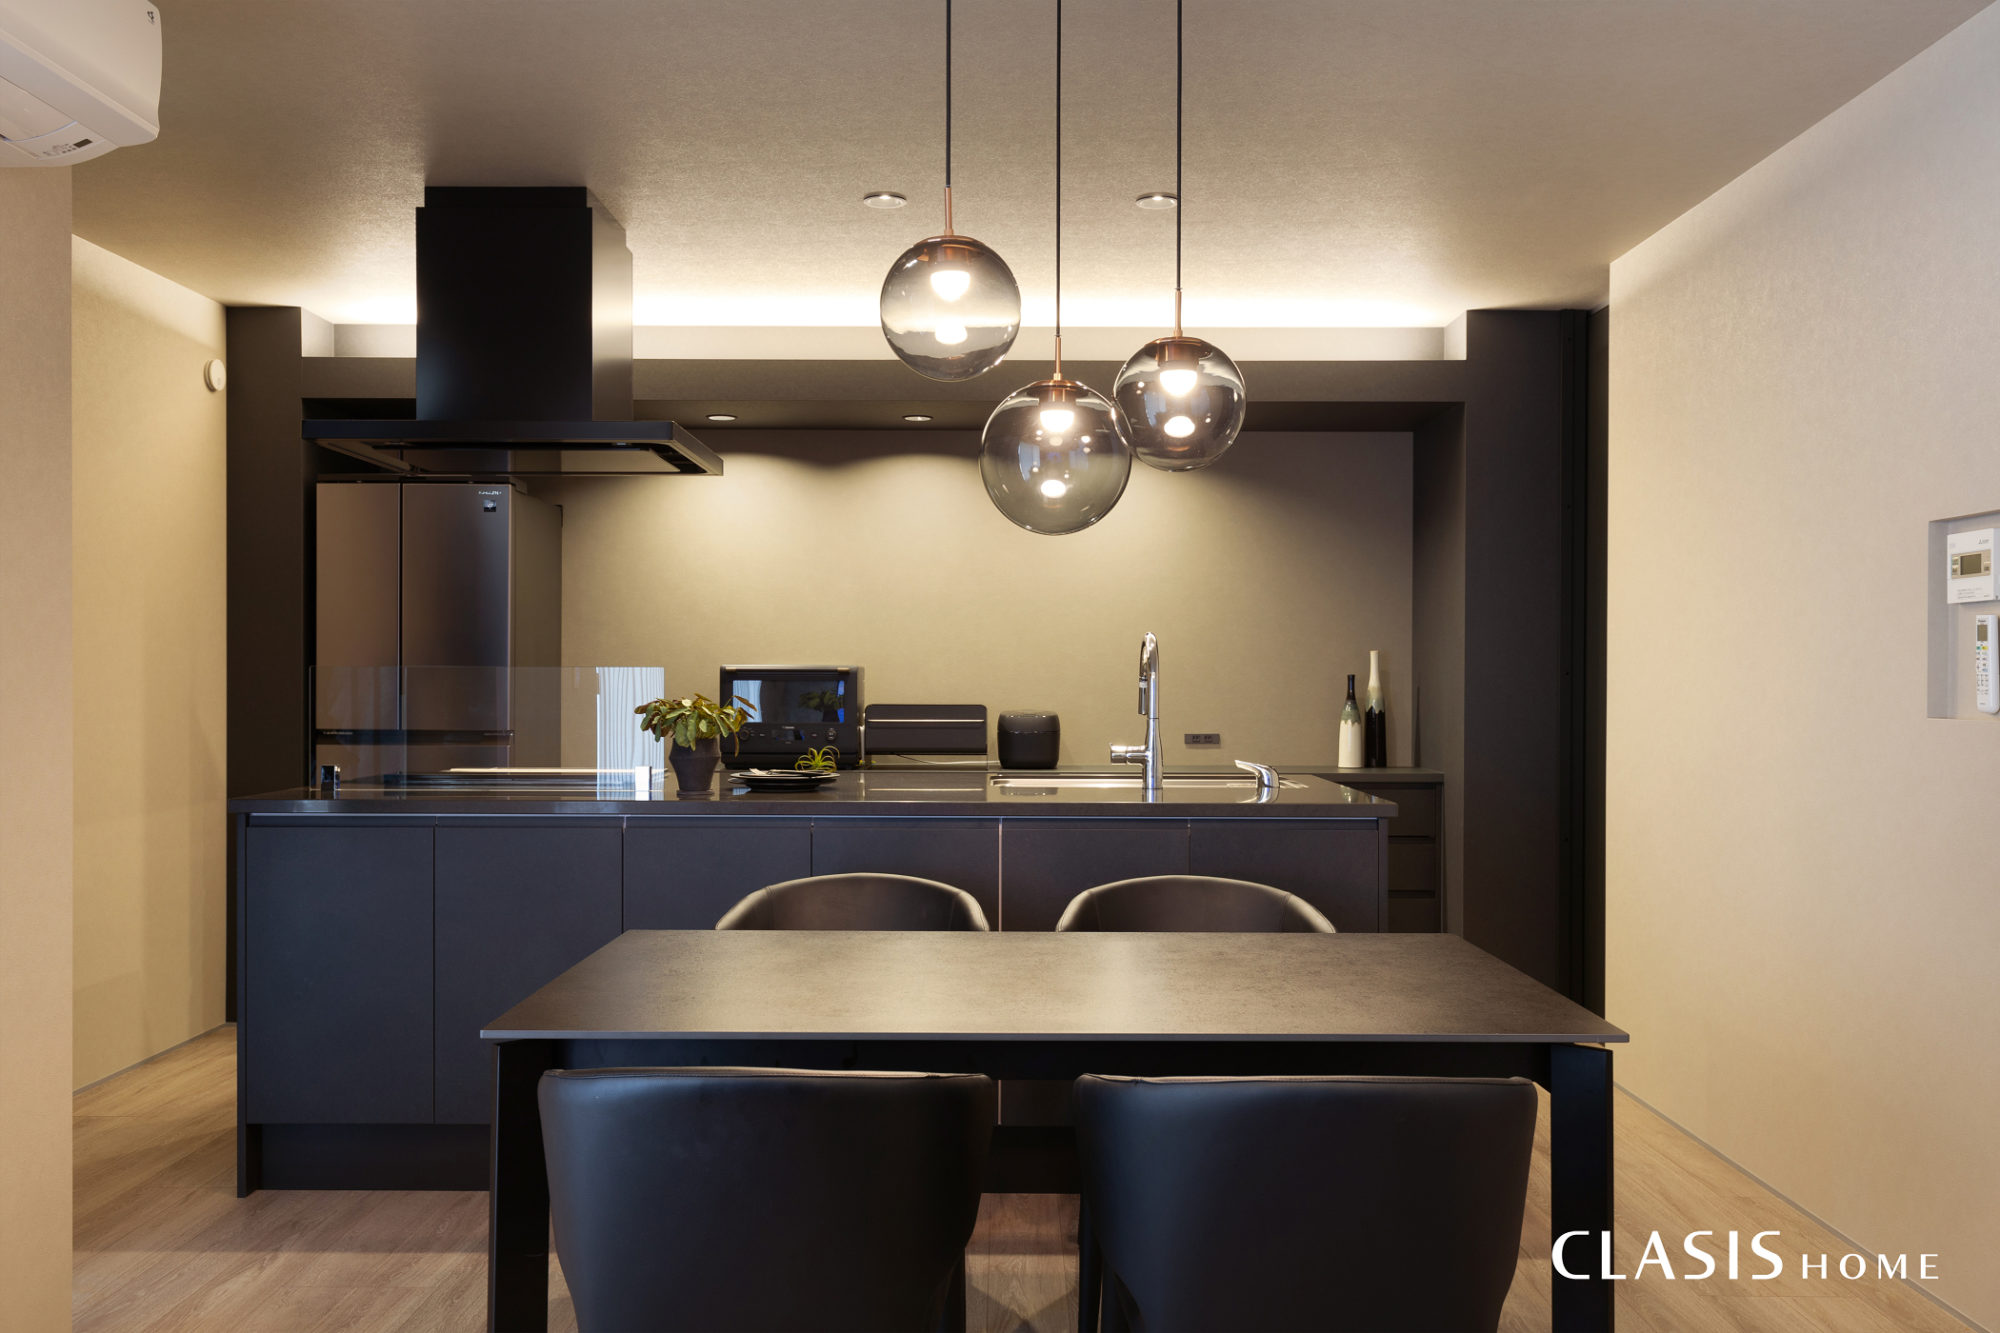 キッチン背面に黒のフレームを造作。間接照明やダウンライトが映えます。